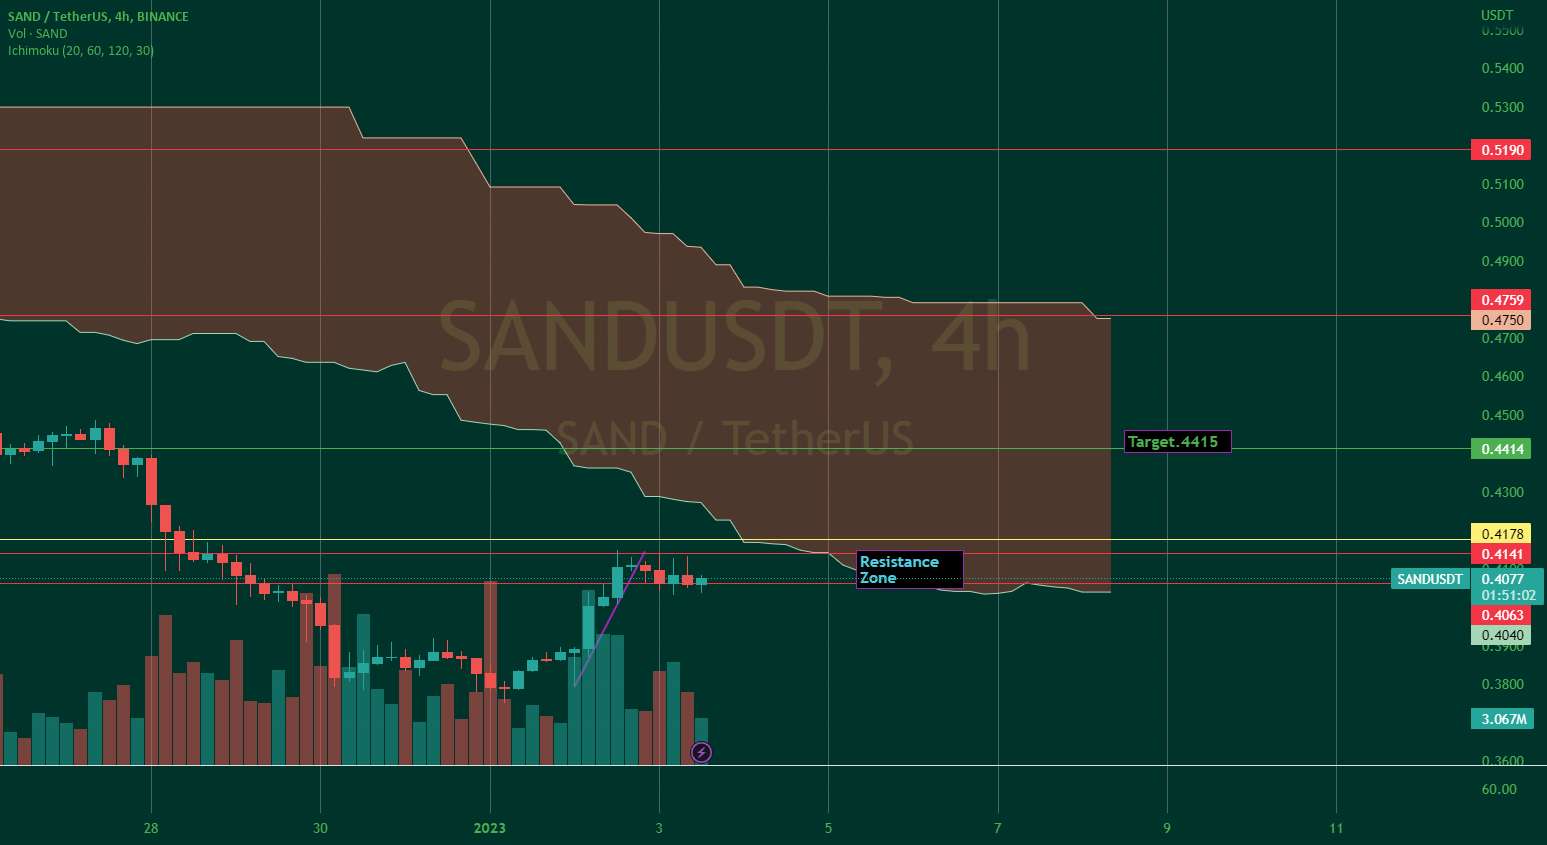  تحلیل سندباکس - SAND پیش بینی قیمت